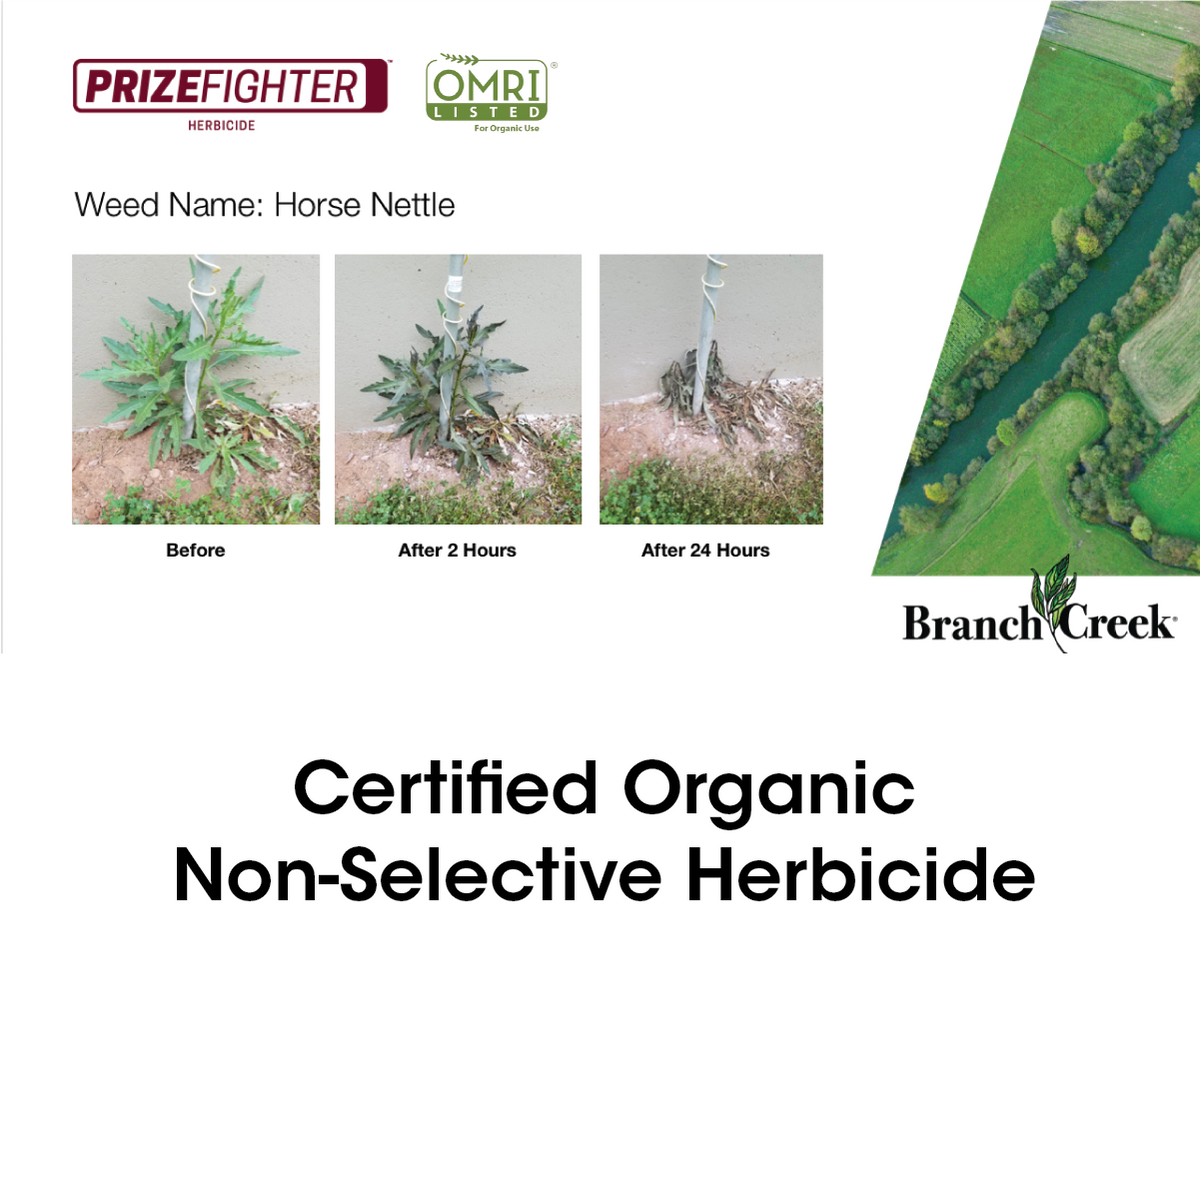 Prize Fighter Herbicide Label